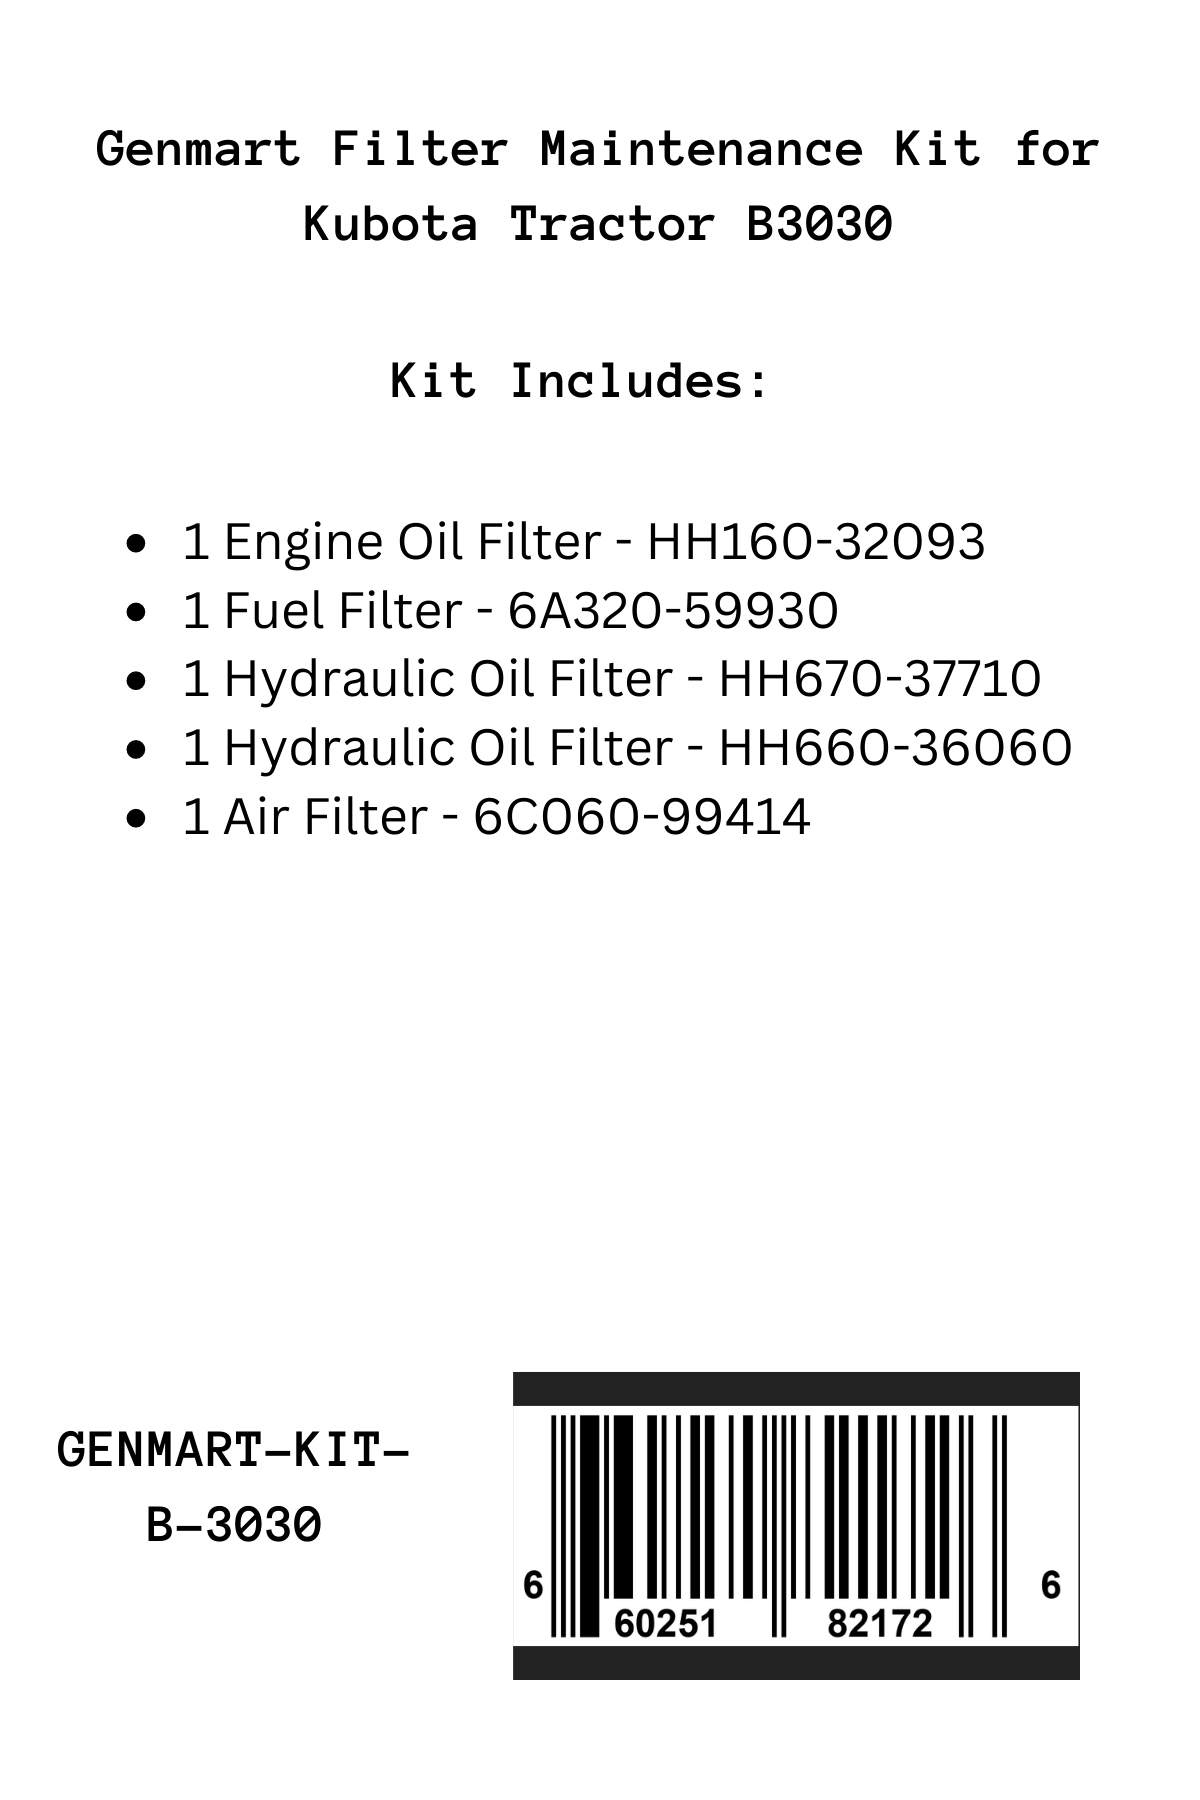 Genmart Maintenance Kit for Kubota Tractor B3030